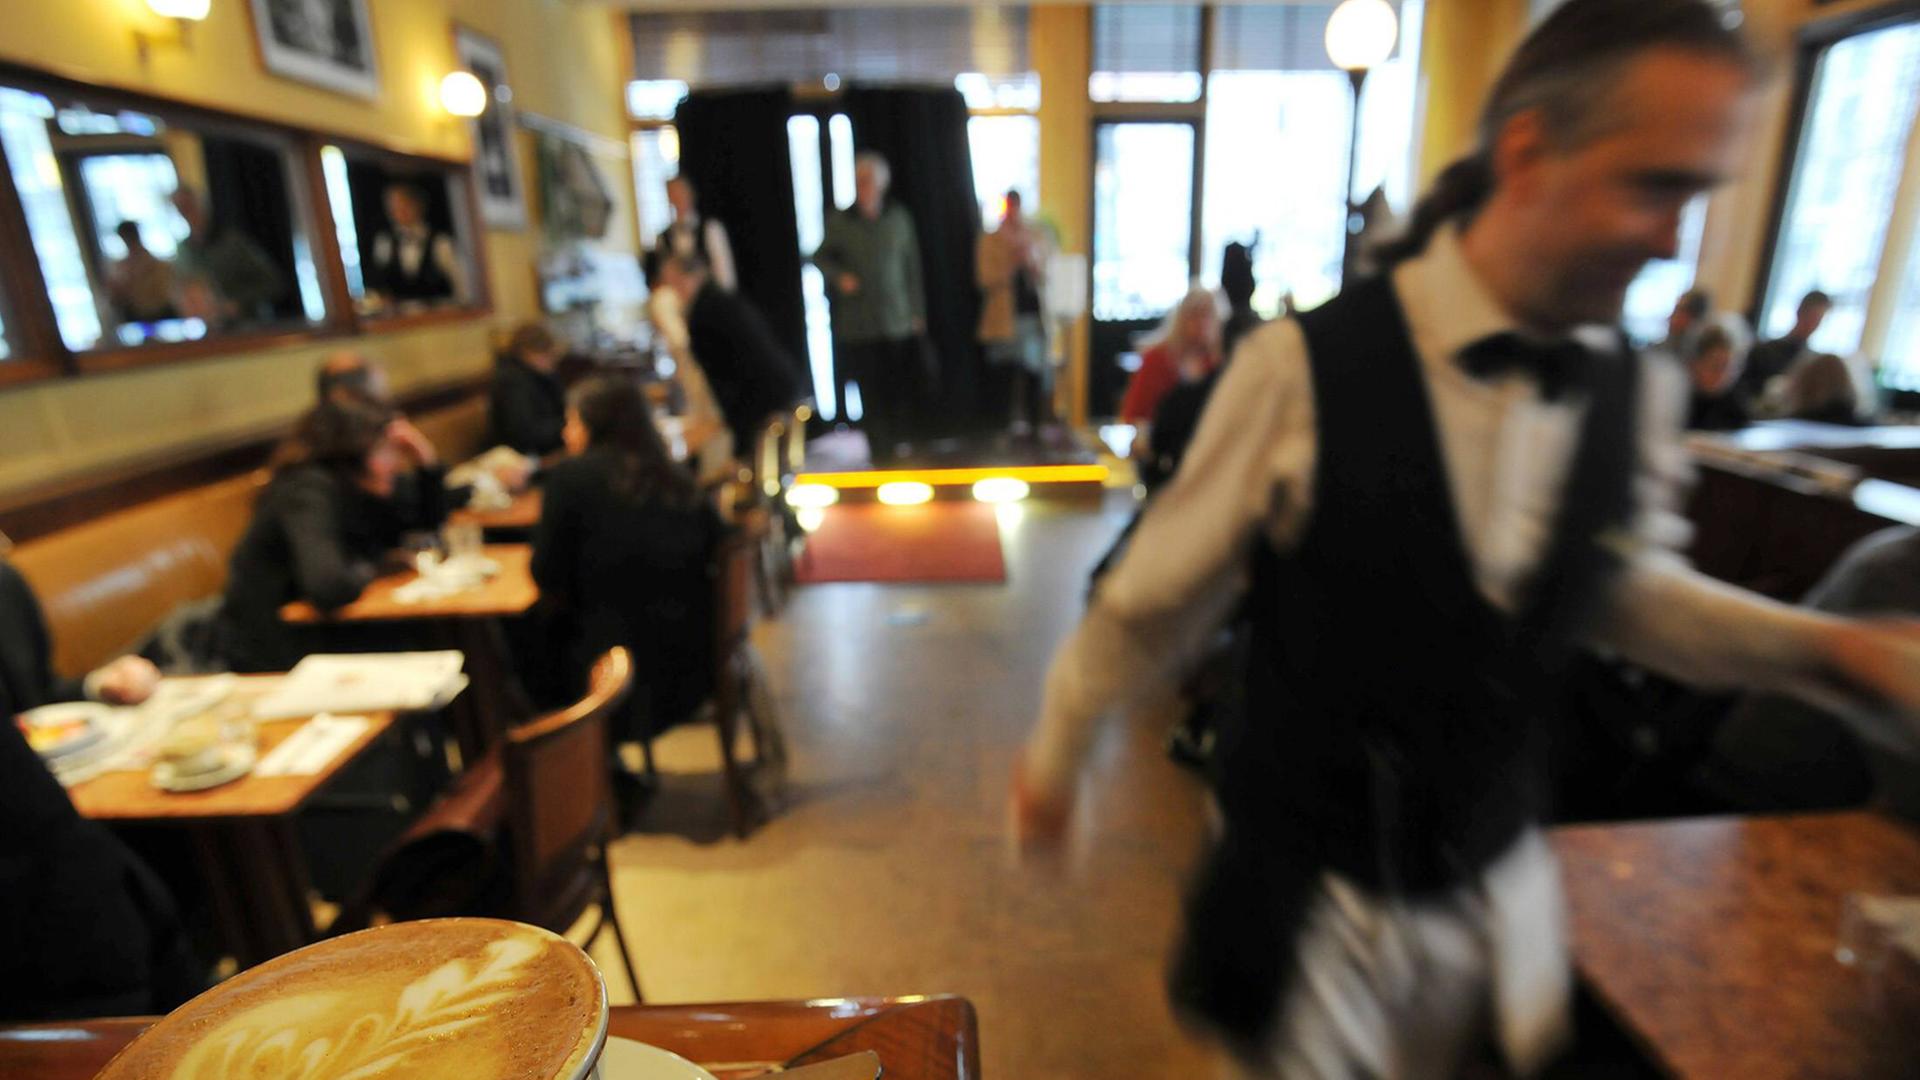 Blick in ein Restaurant, auf einer Theke im Vordergrund steht ein Kaffee, ein Kellner läuft durchs Bild.